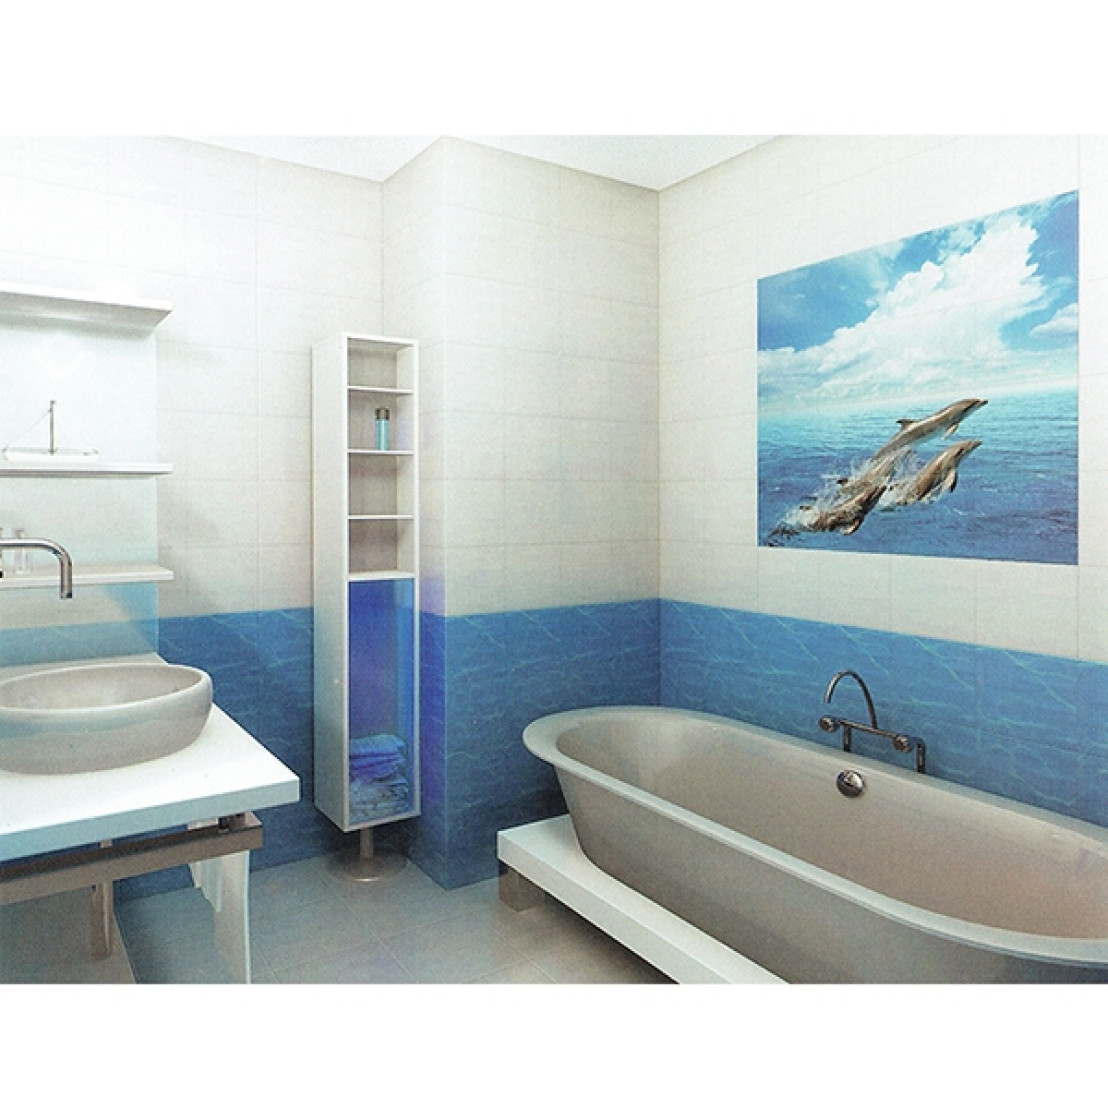 панели в ванной комнате дизайн